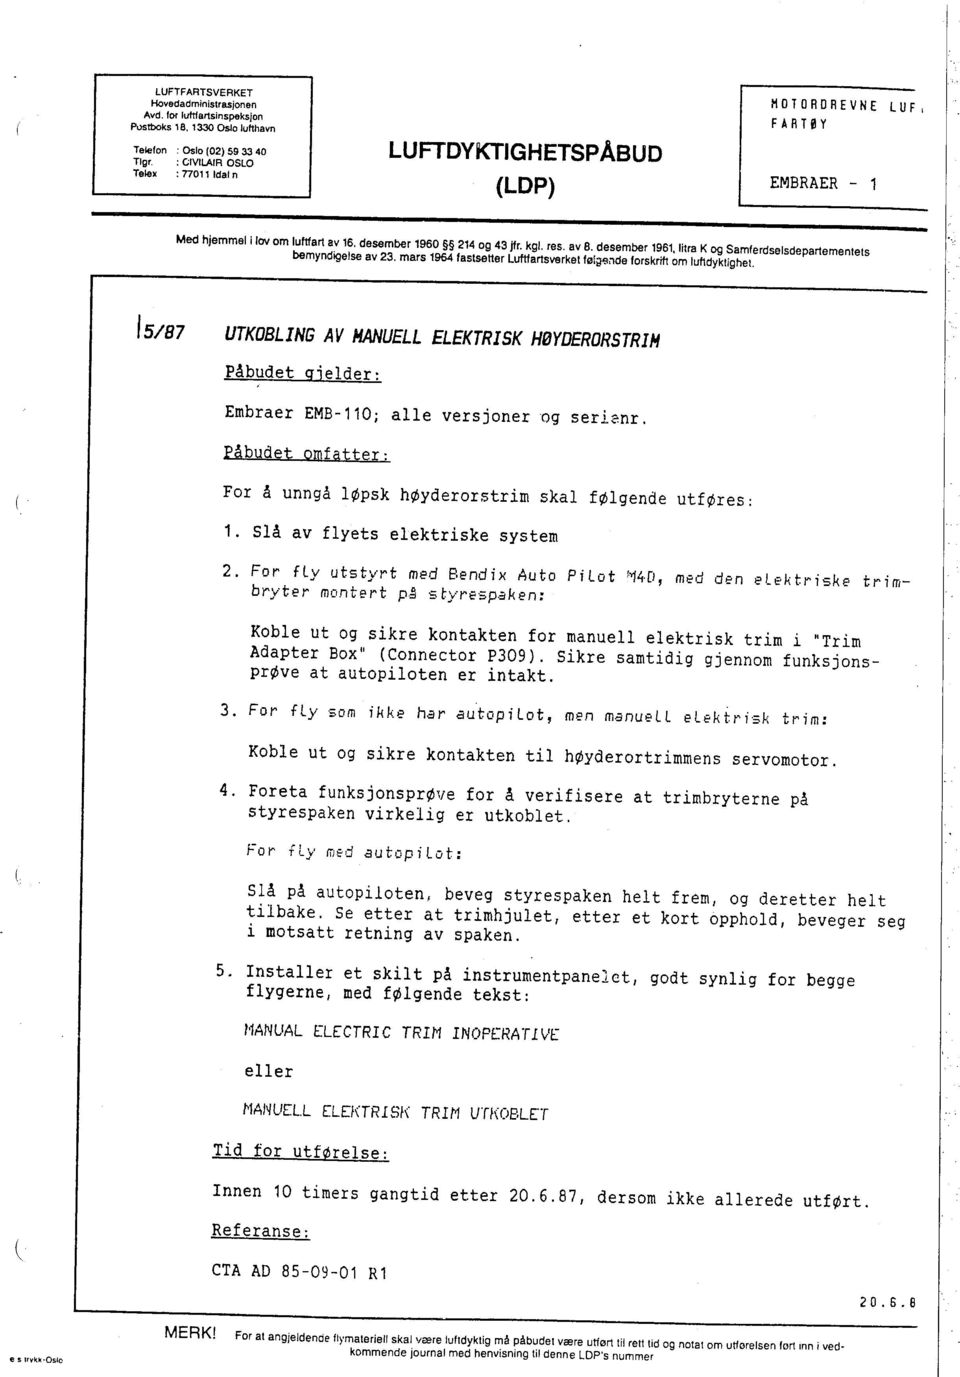 desember 1961, Iltra K og Samferdselsdepartementets bemyndigelse av 23. mars 196 fastsetter Lufartsverket føi jsnde forskrif om lufdyklighet.